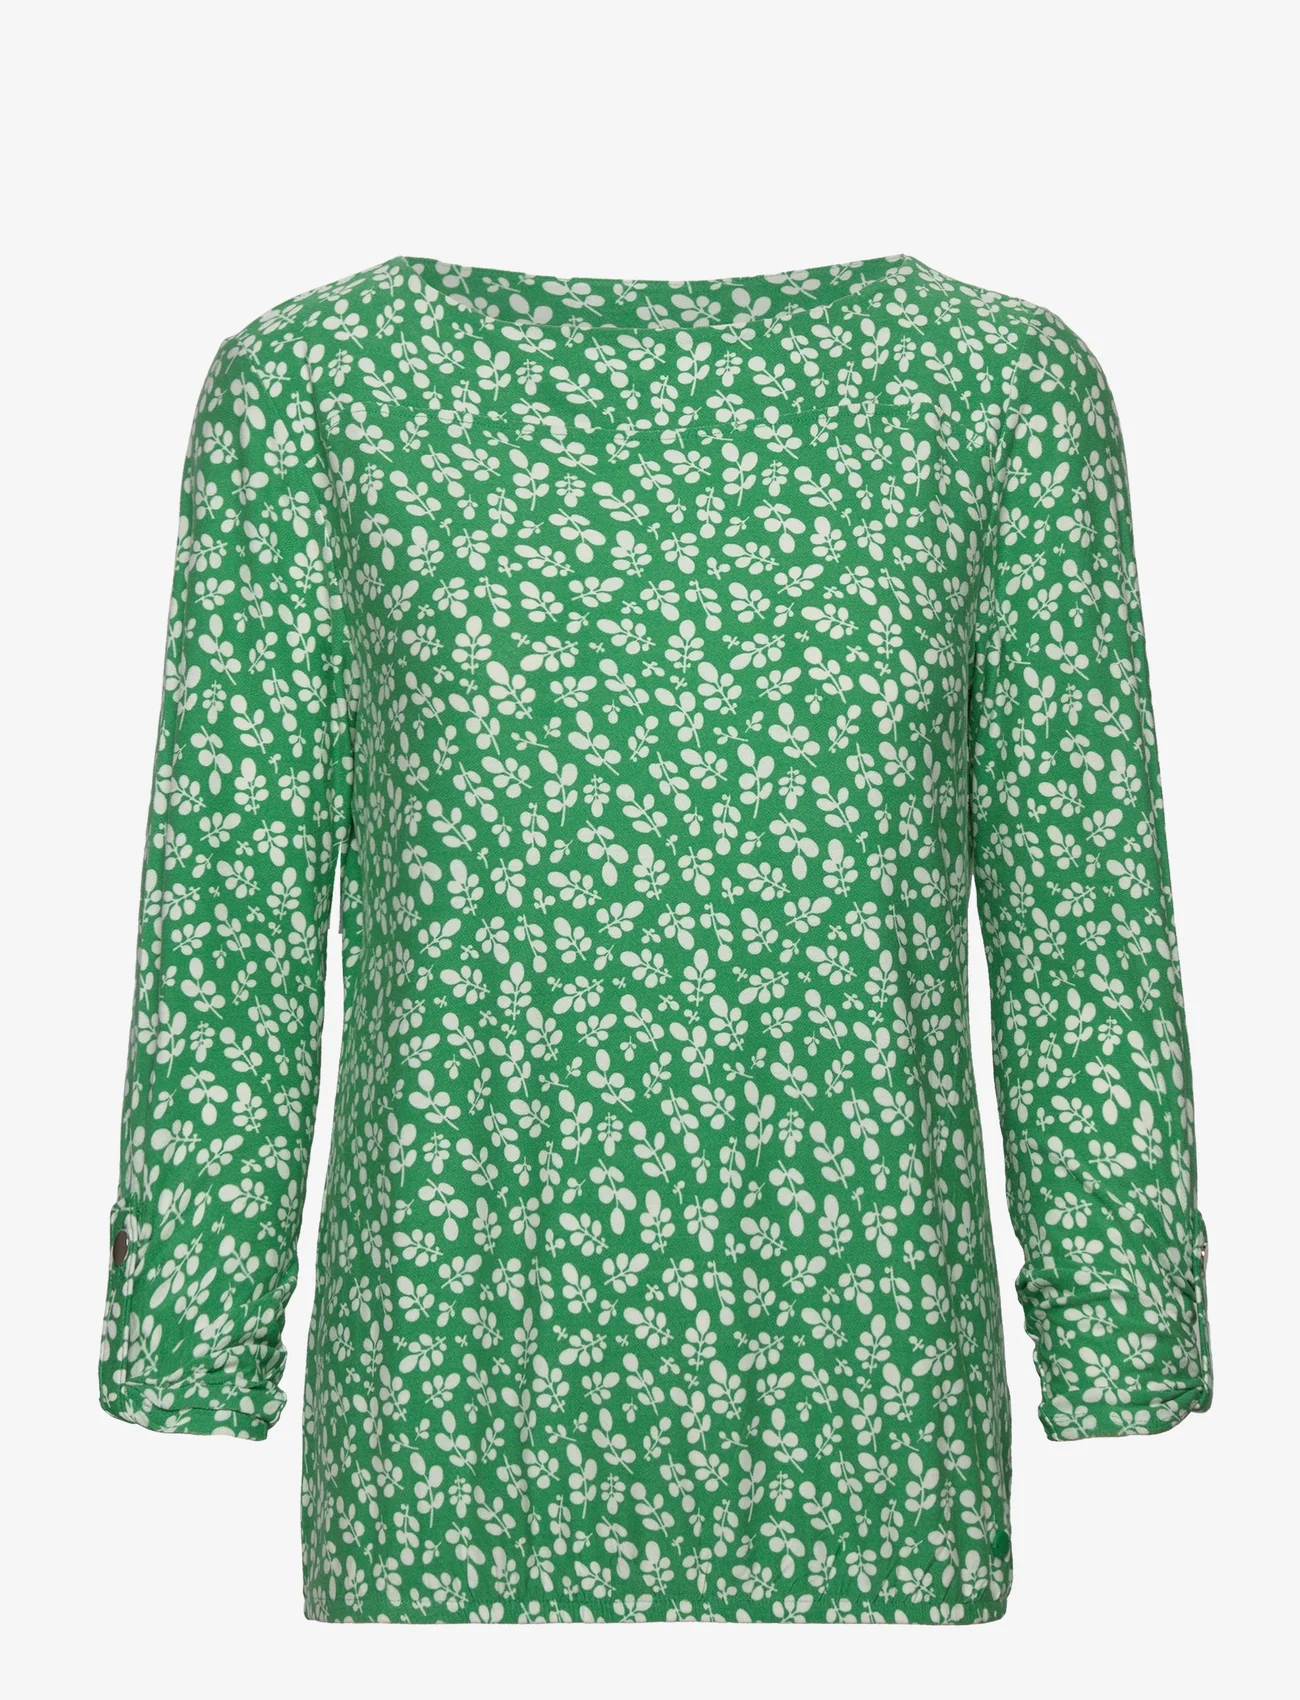 Tom Tailor - T-shirt boat neck alloverprint - green floral design - 0